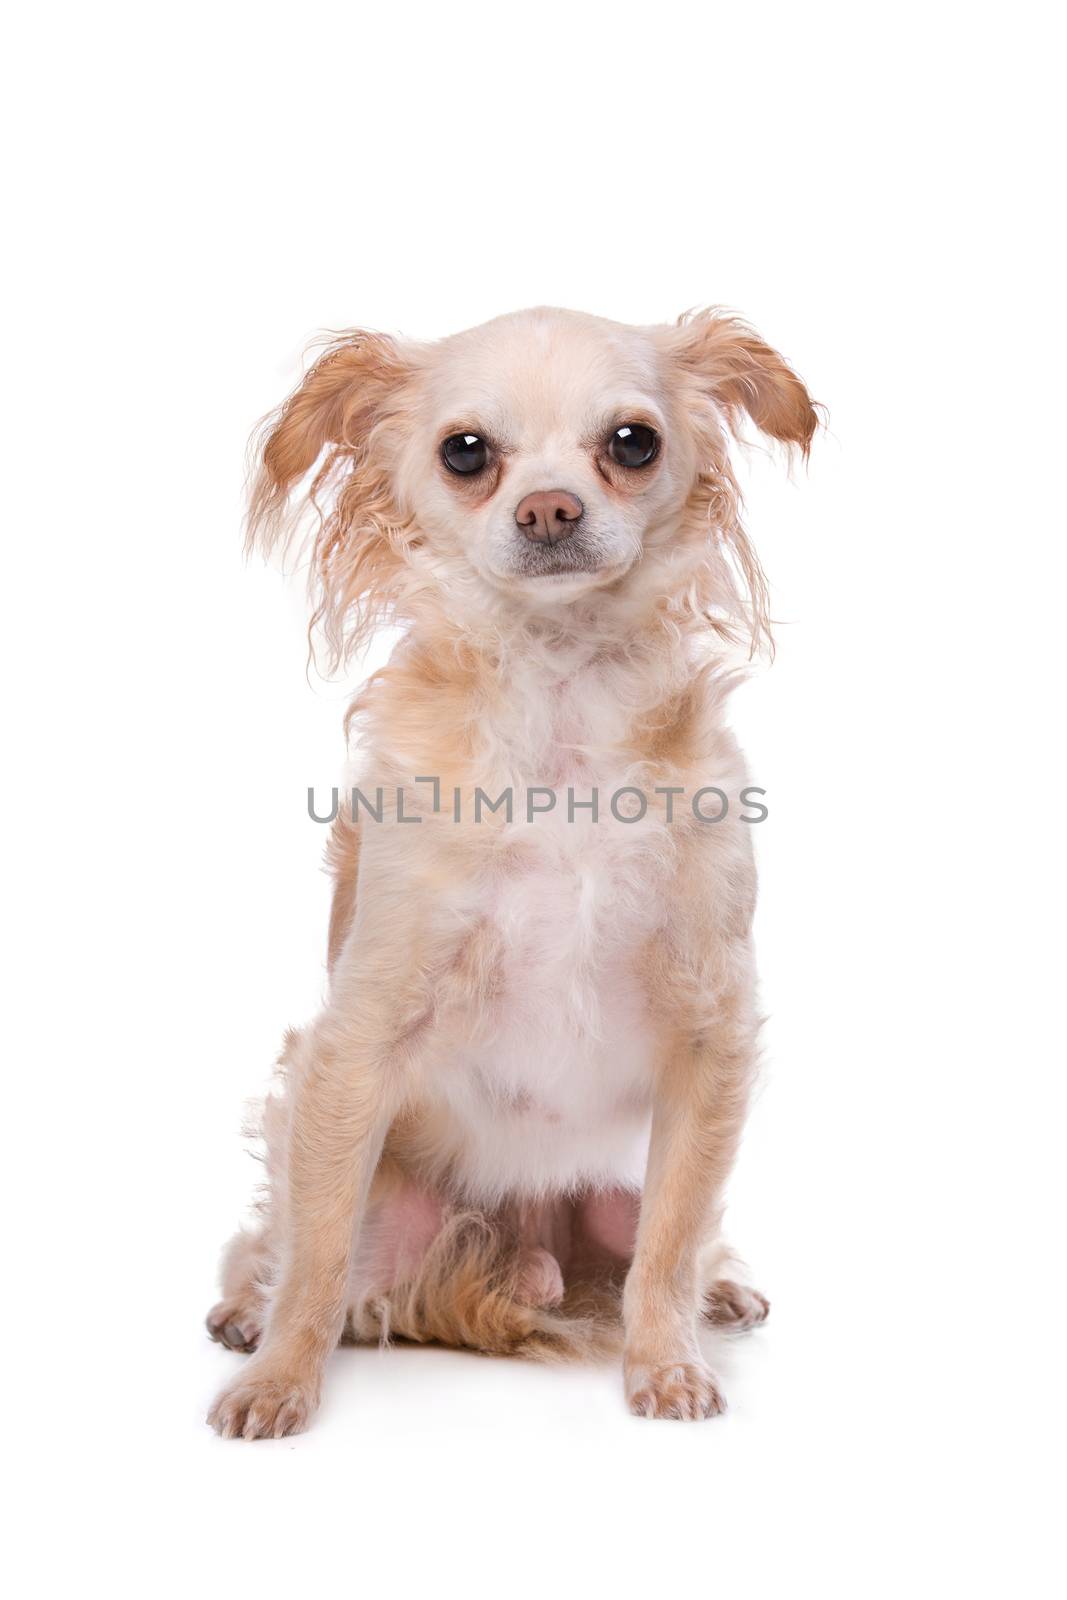 Mixed breed Chihuahua dog by eriklam